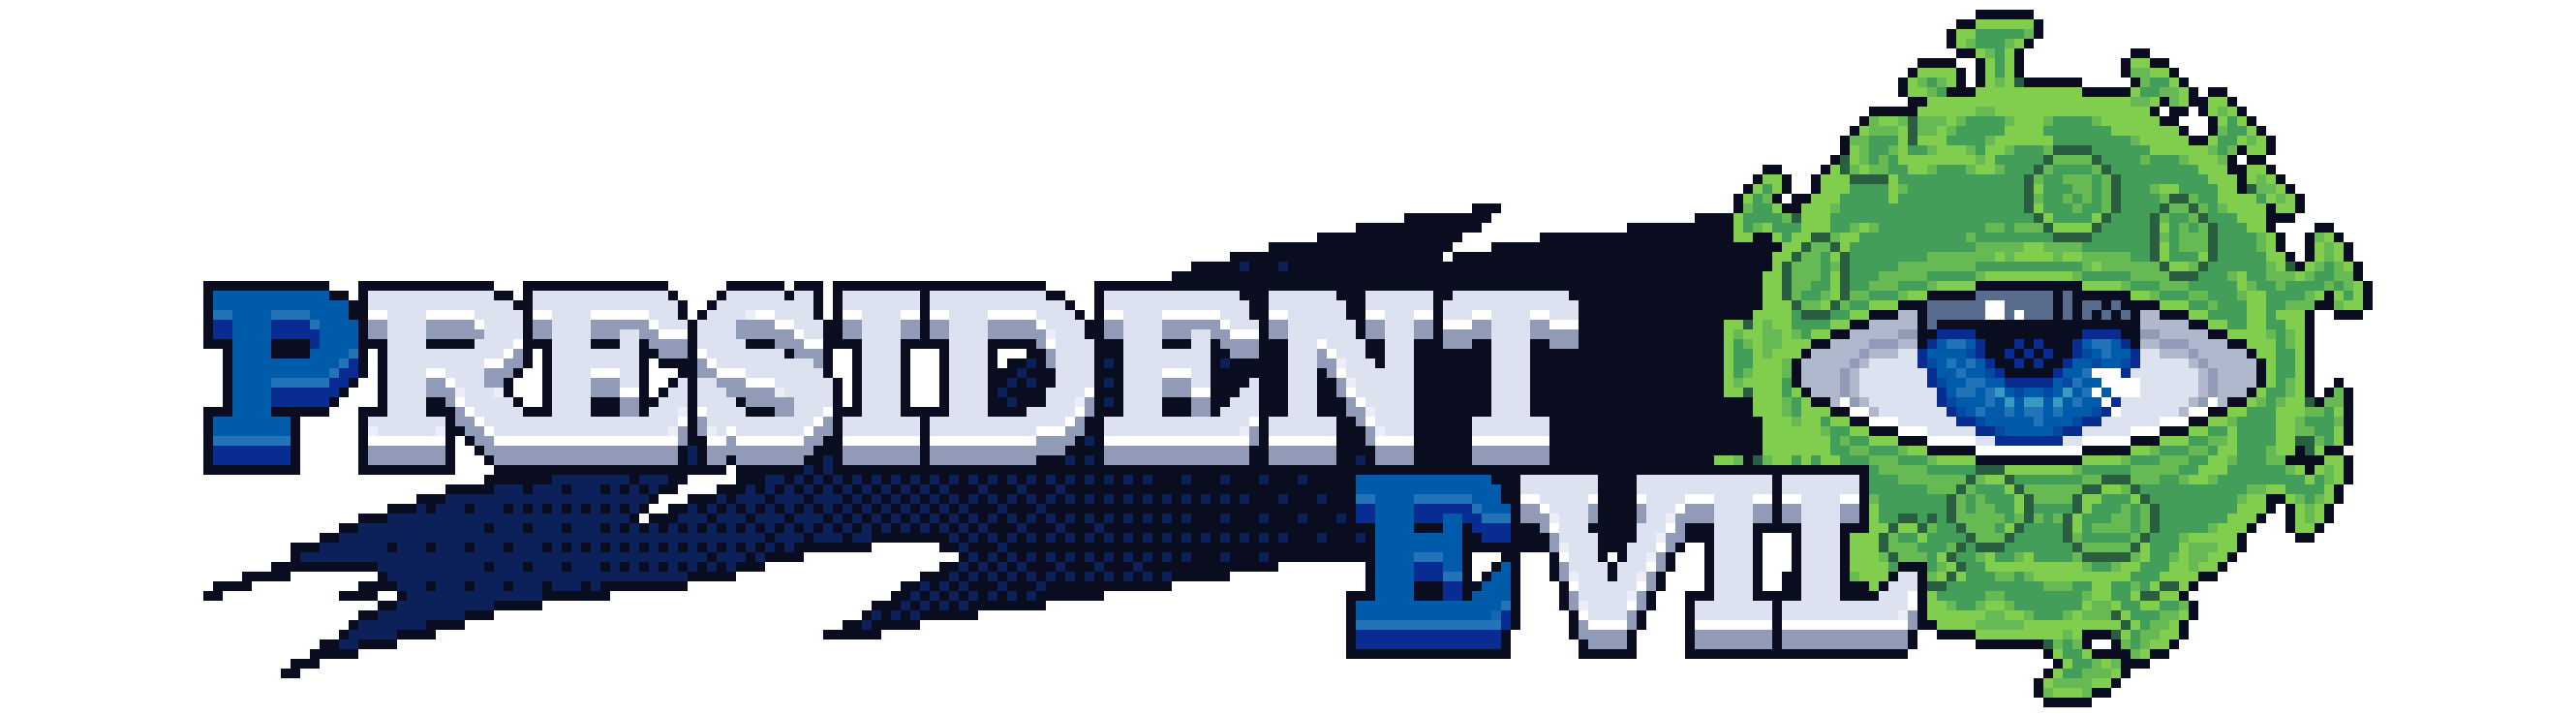 President Evil [Demo]